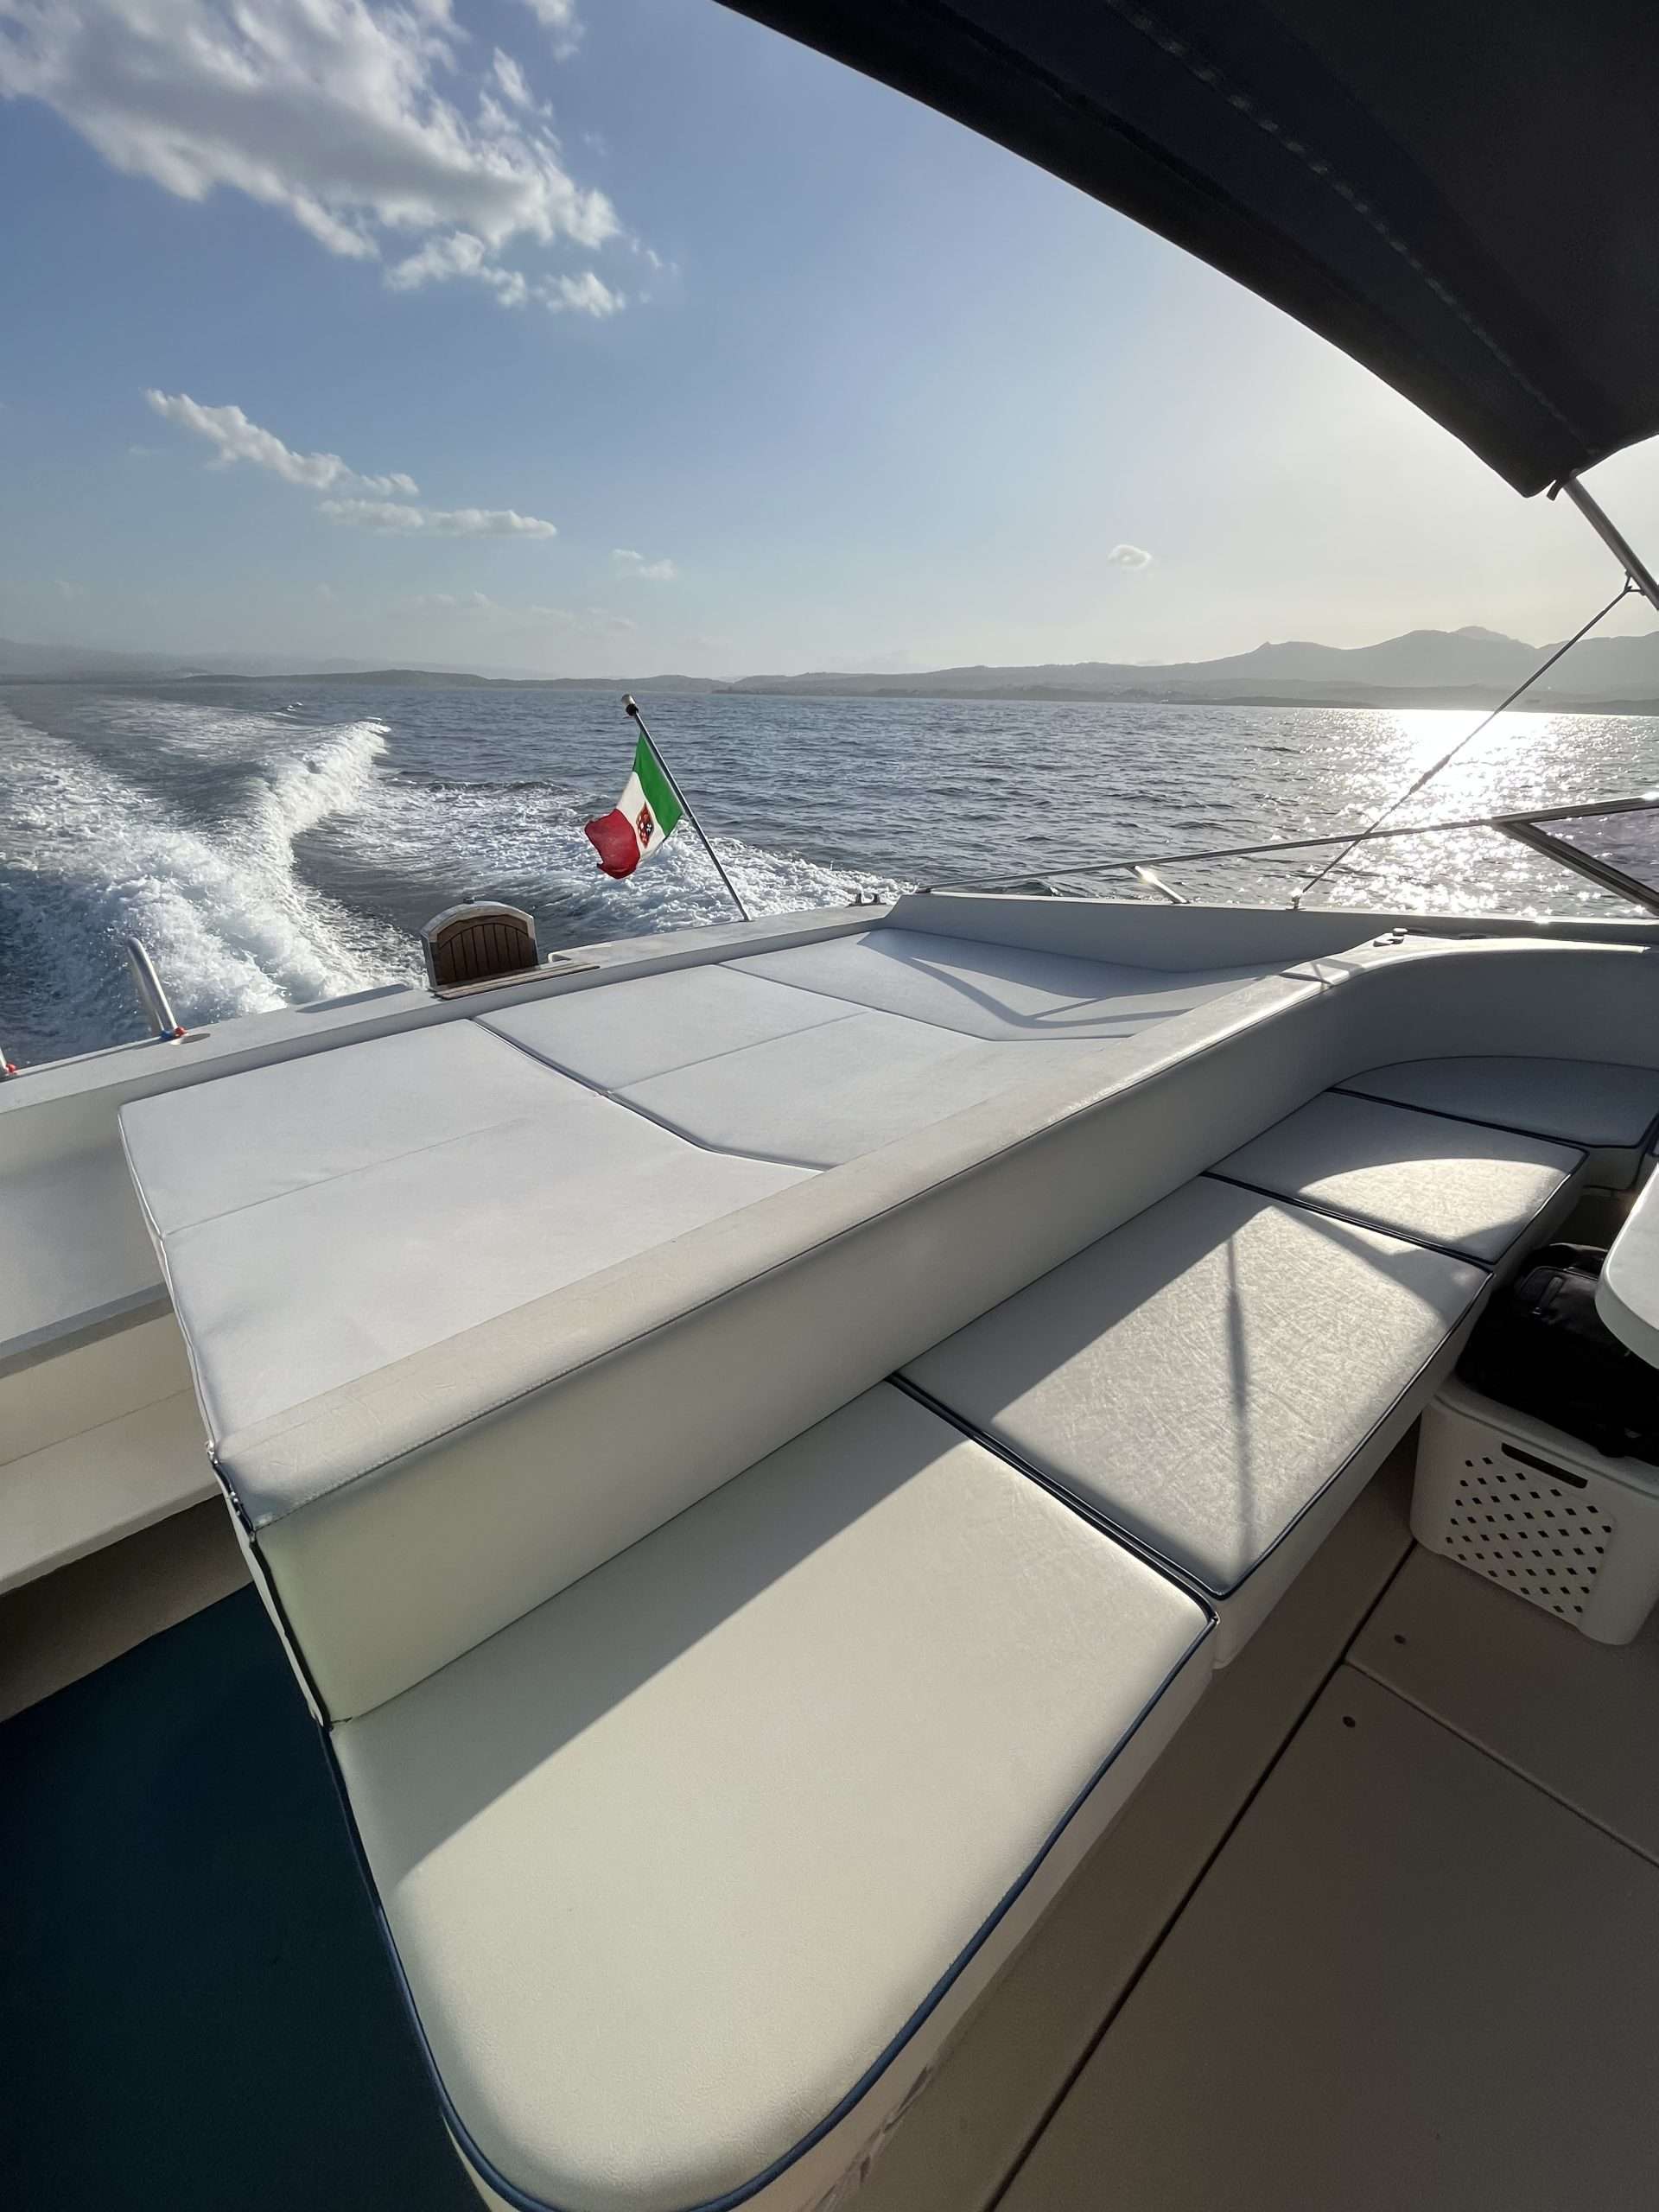 45 - Motor Boat Charter Italy & Boat hire in Italy Sardinia Costa Smeralda Olbia 5